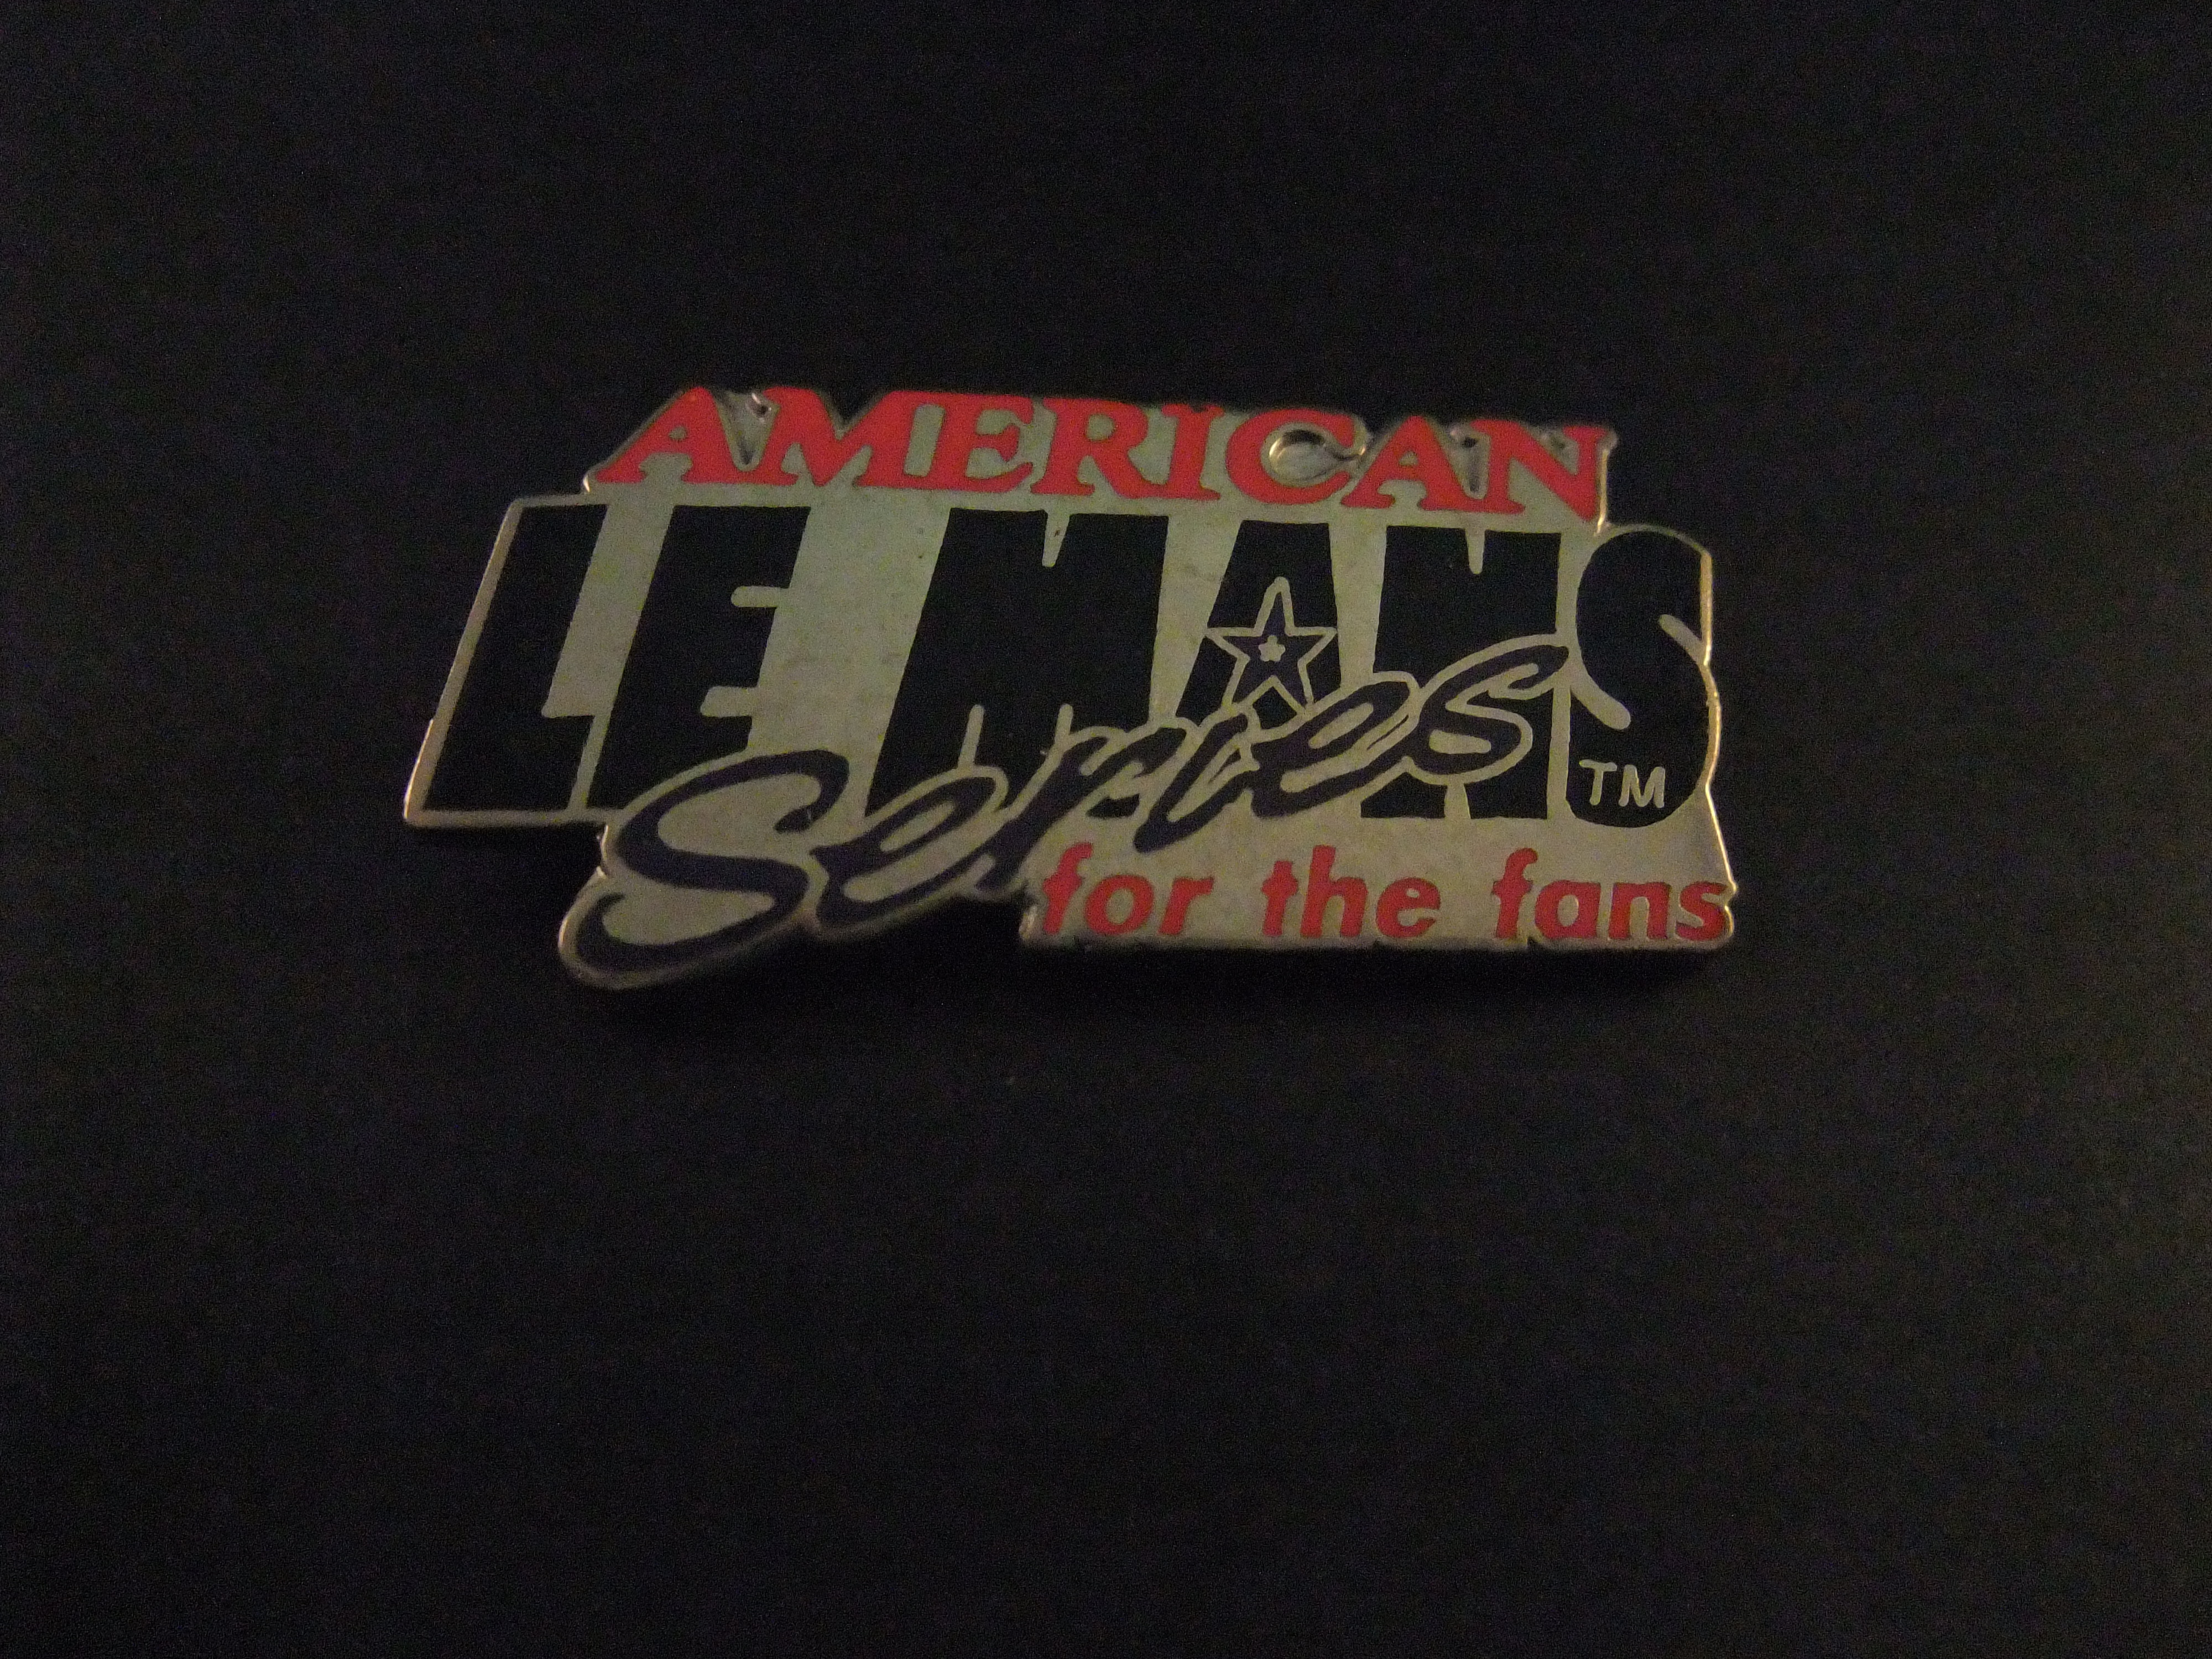 American Le Mans Series( ALMS )sportwagenraceserie in de Verenigde Staten en Canada, vergelijkbaar met de 24 uur van Le Mans